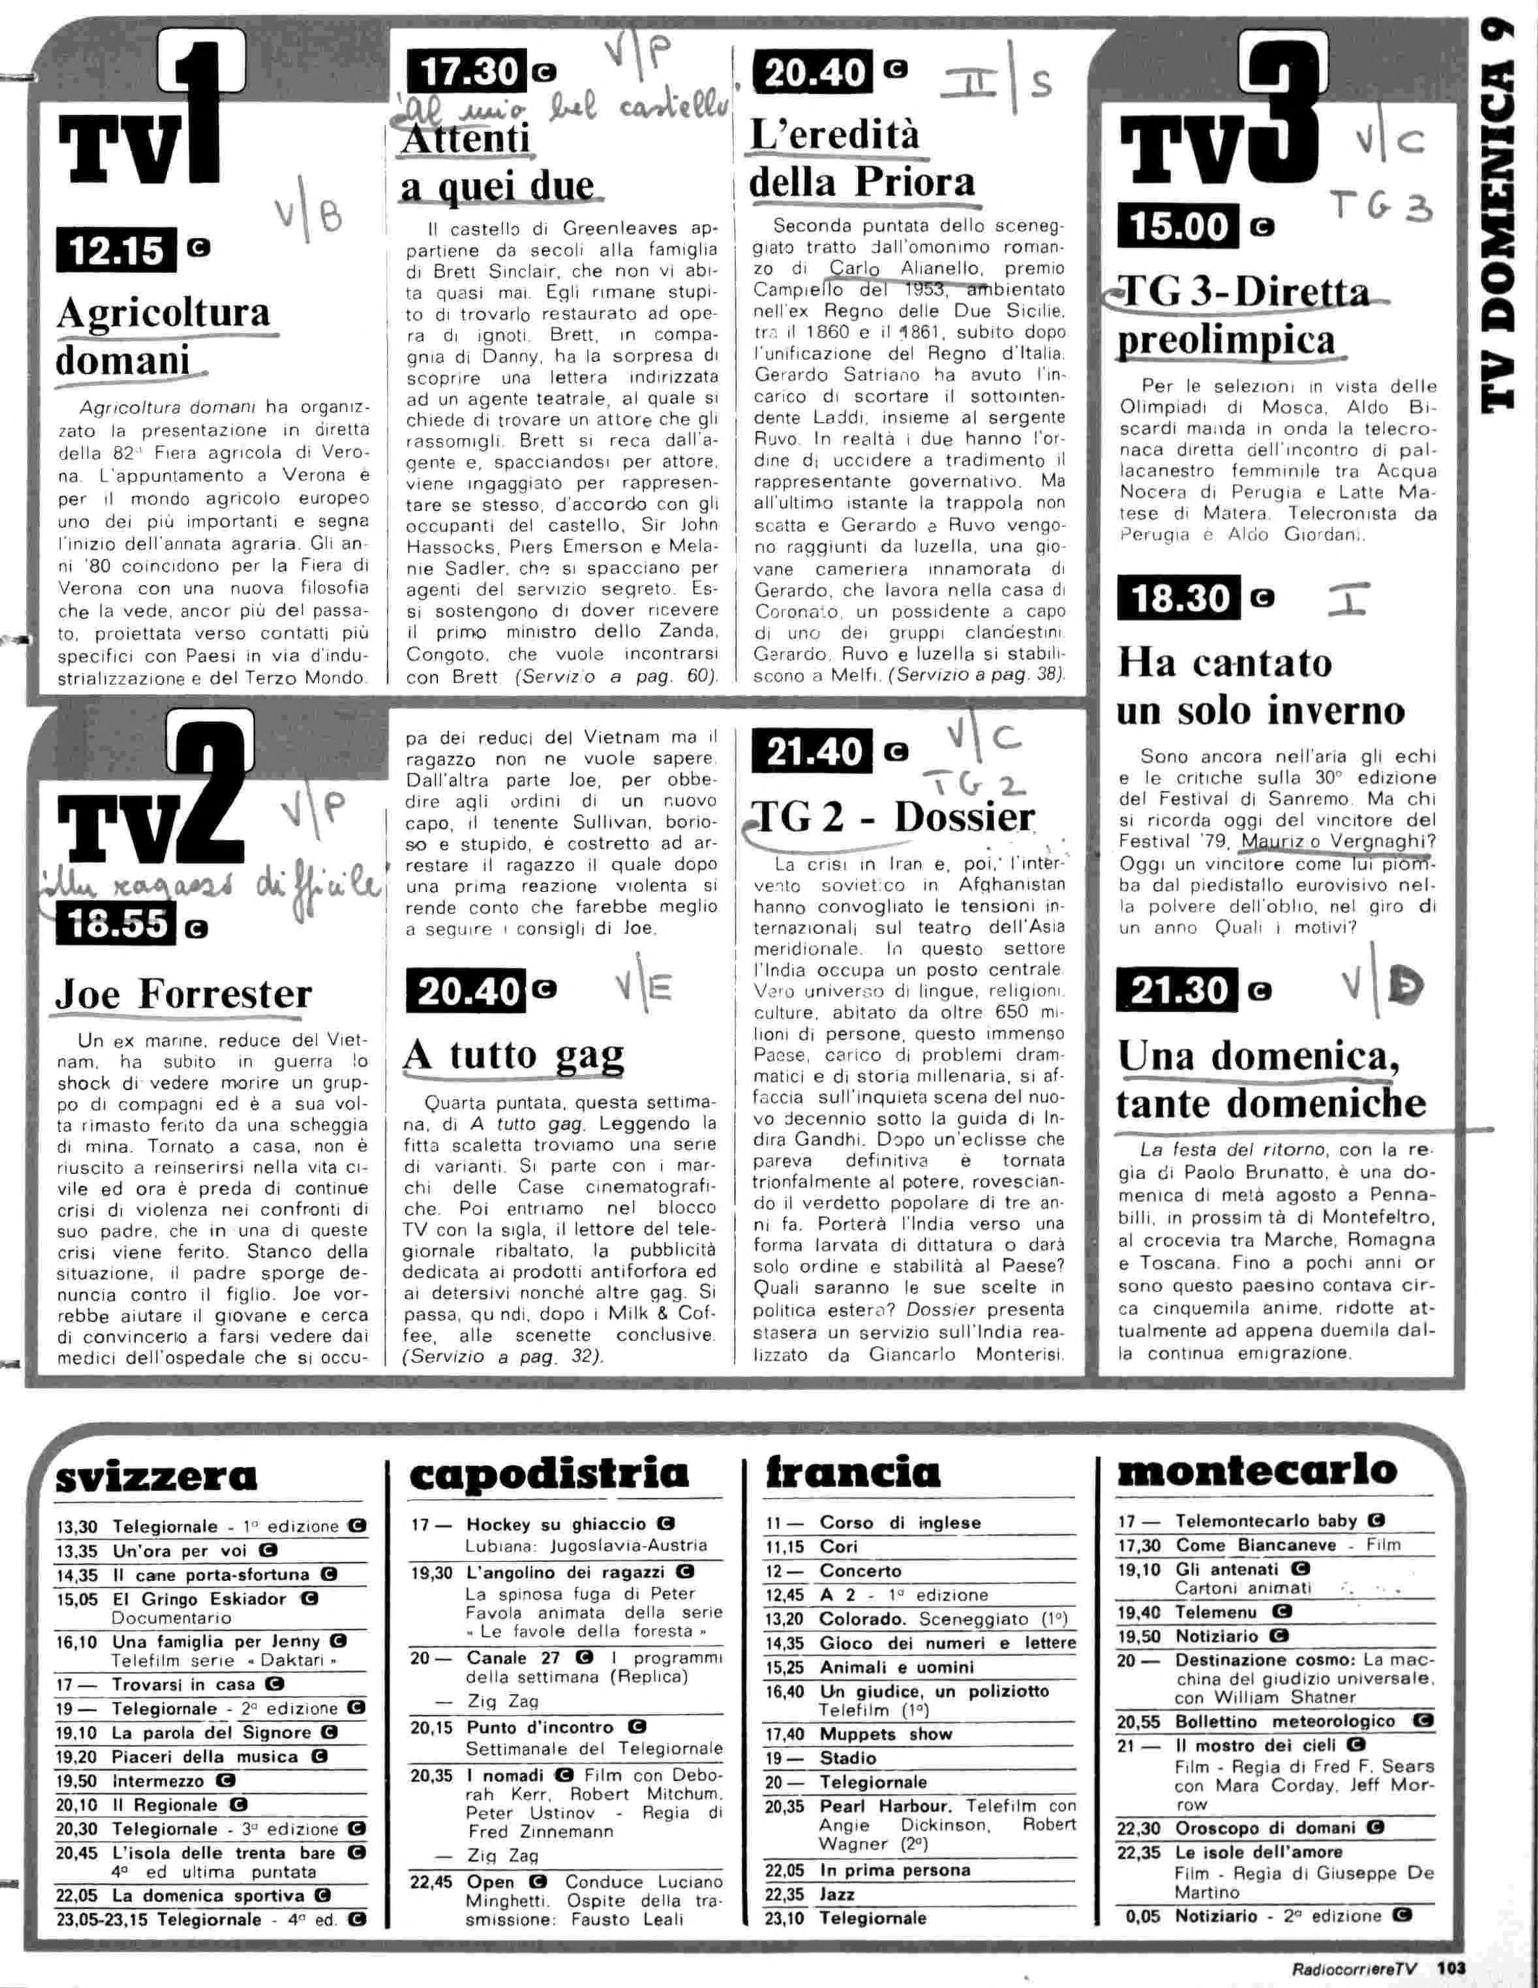 RC-1980-11_0102.jp2&id=Radiocorriere-198